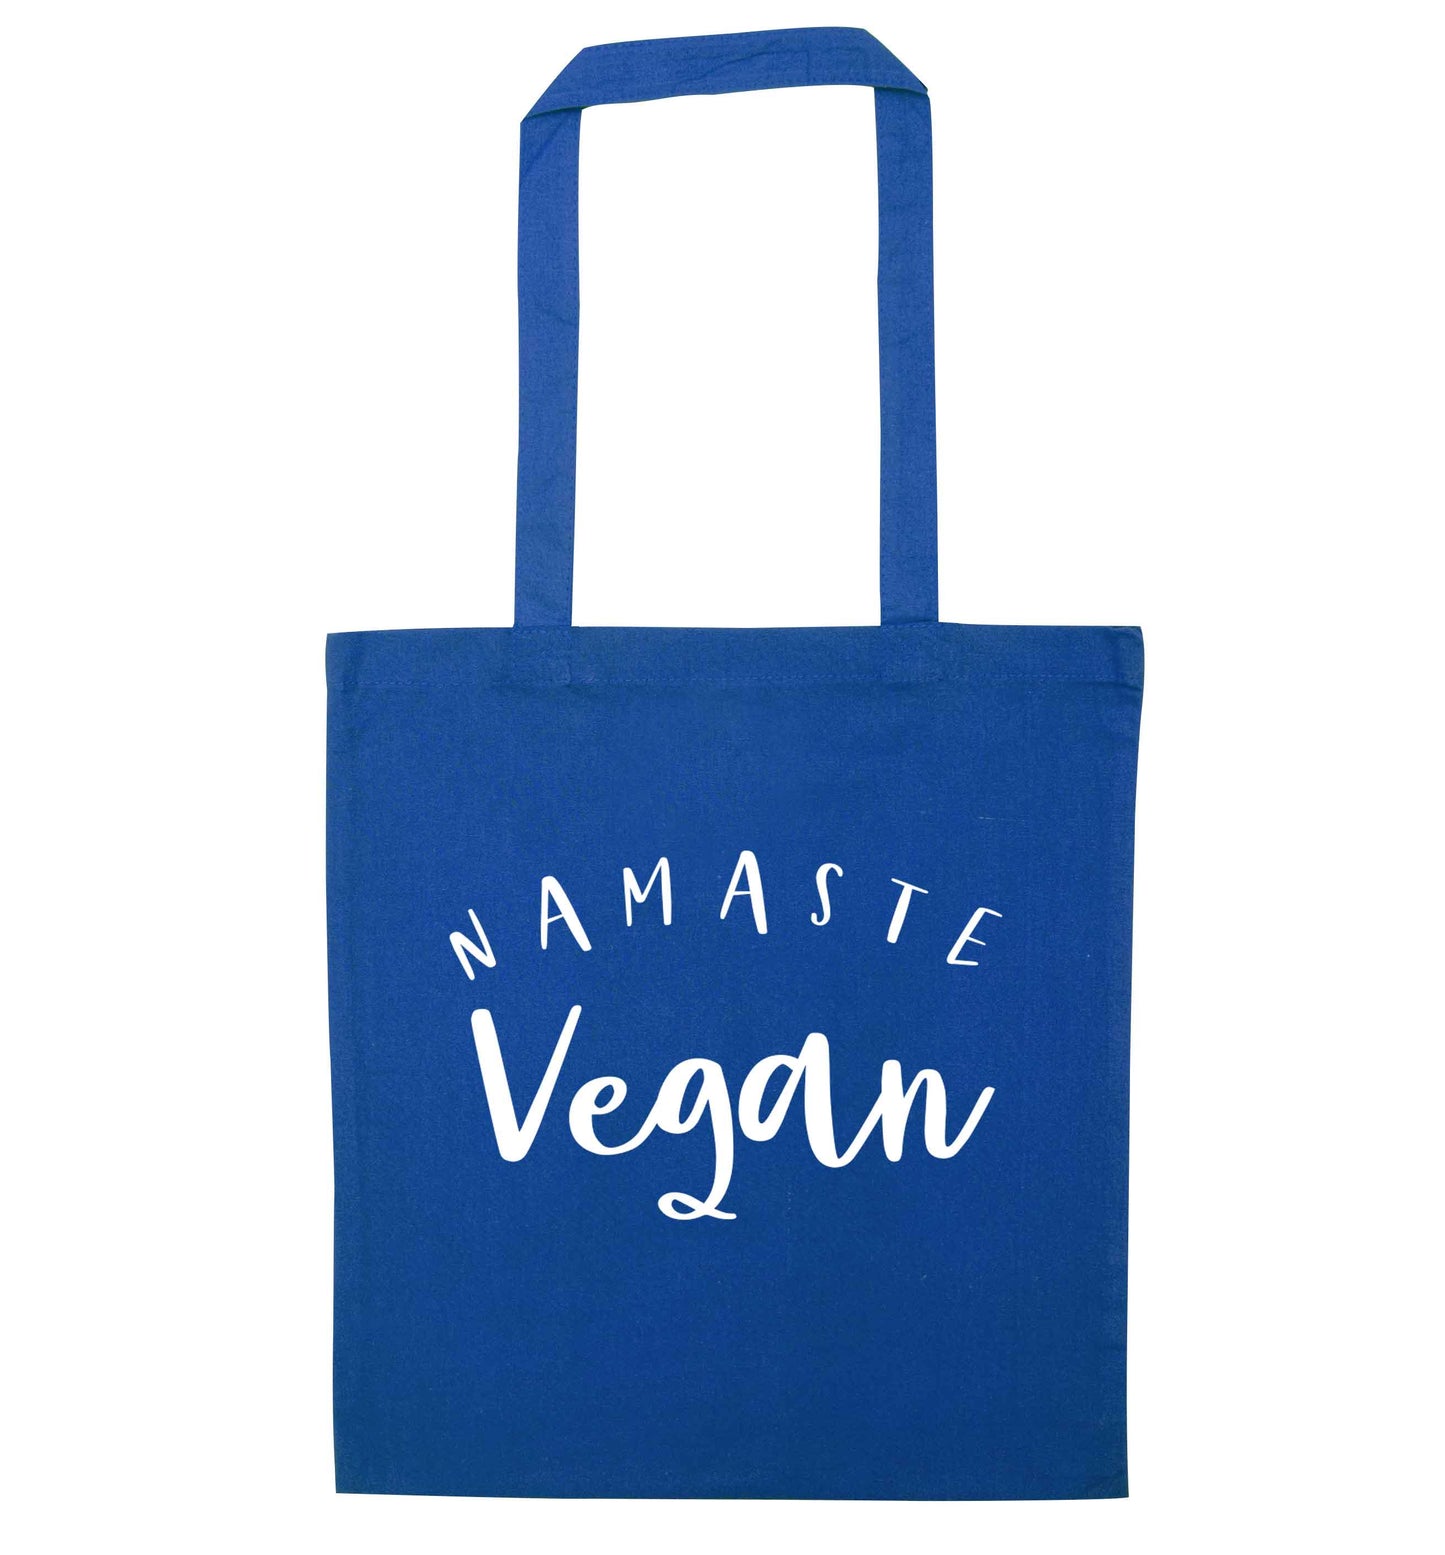 Namaste vegan blue tote bag